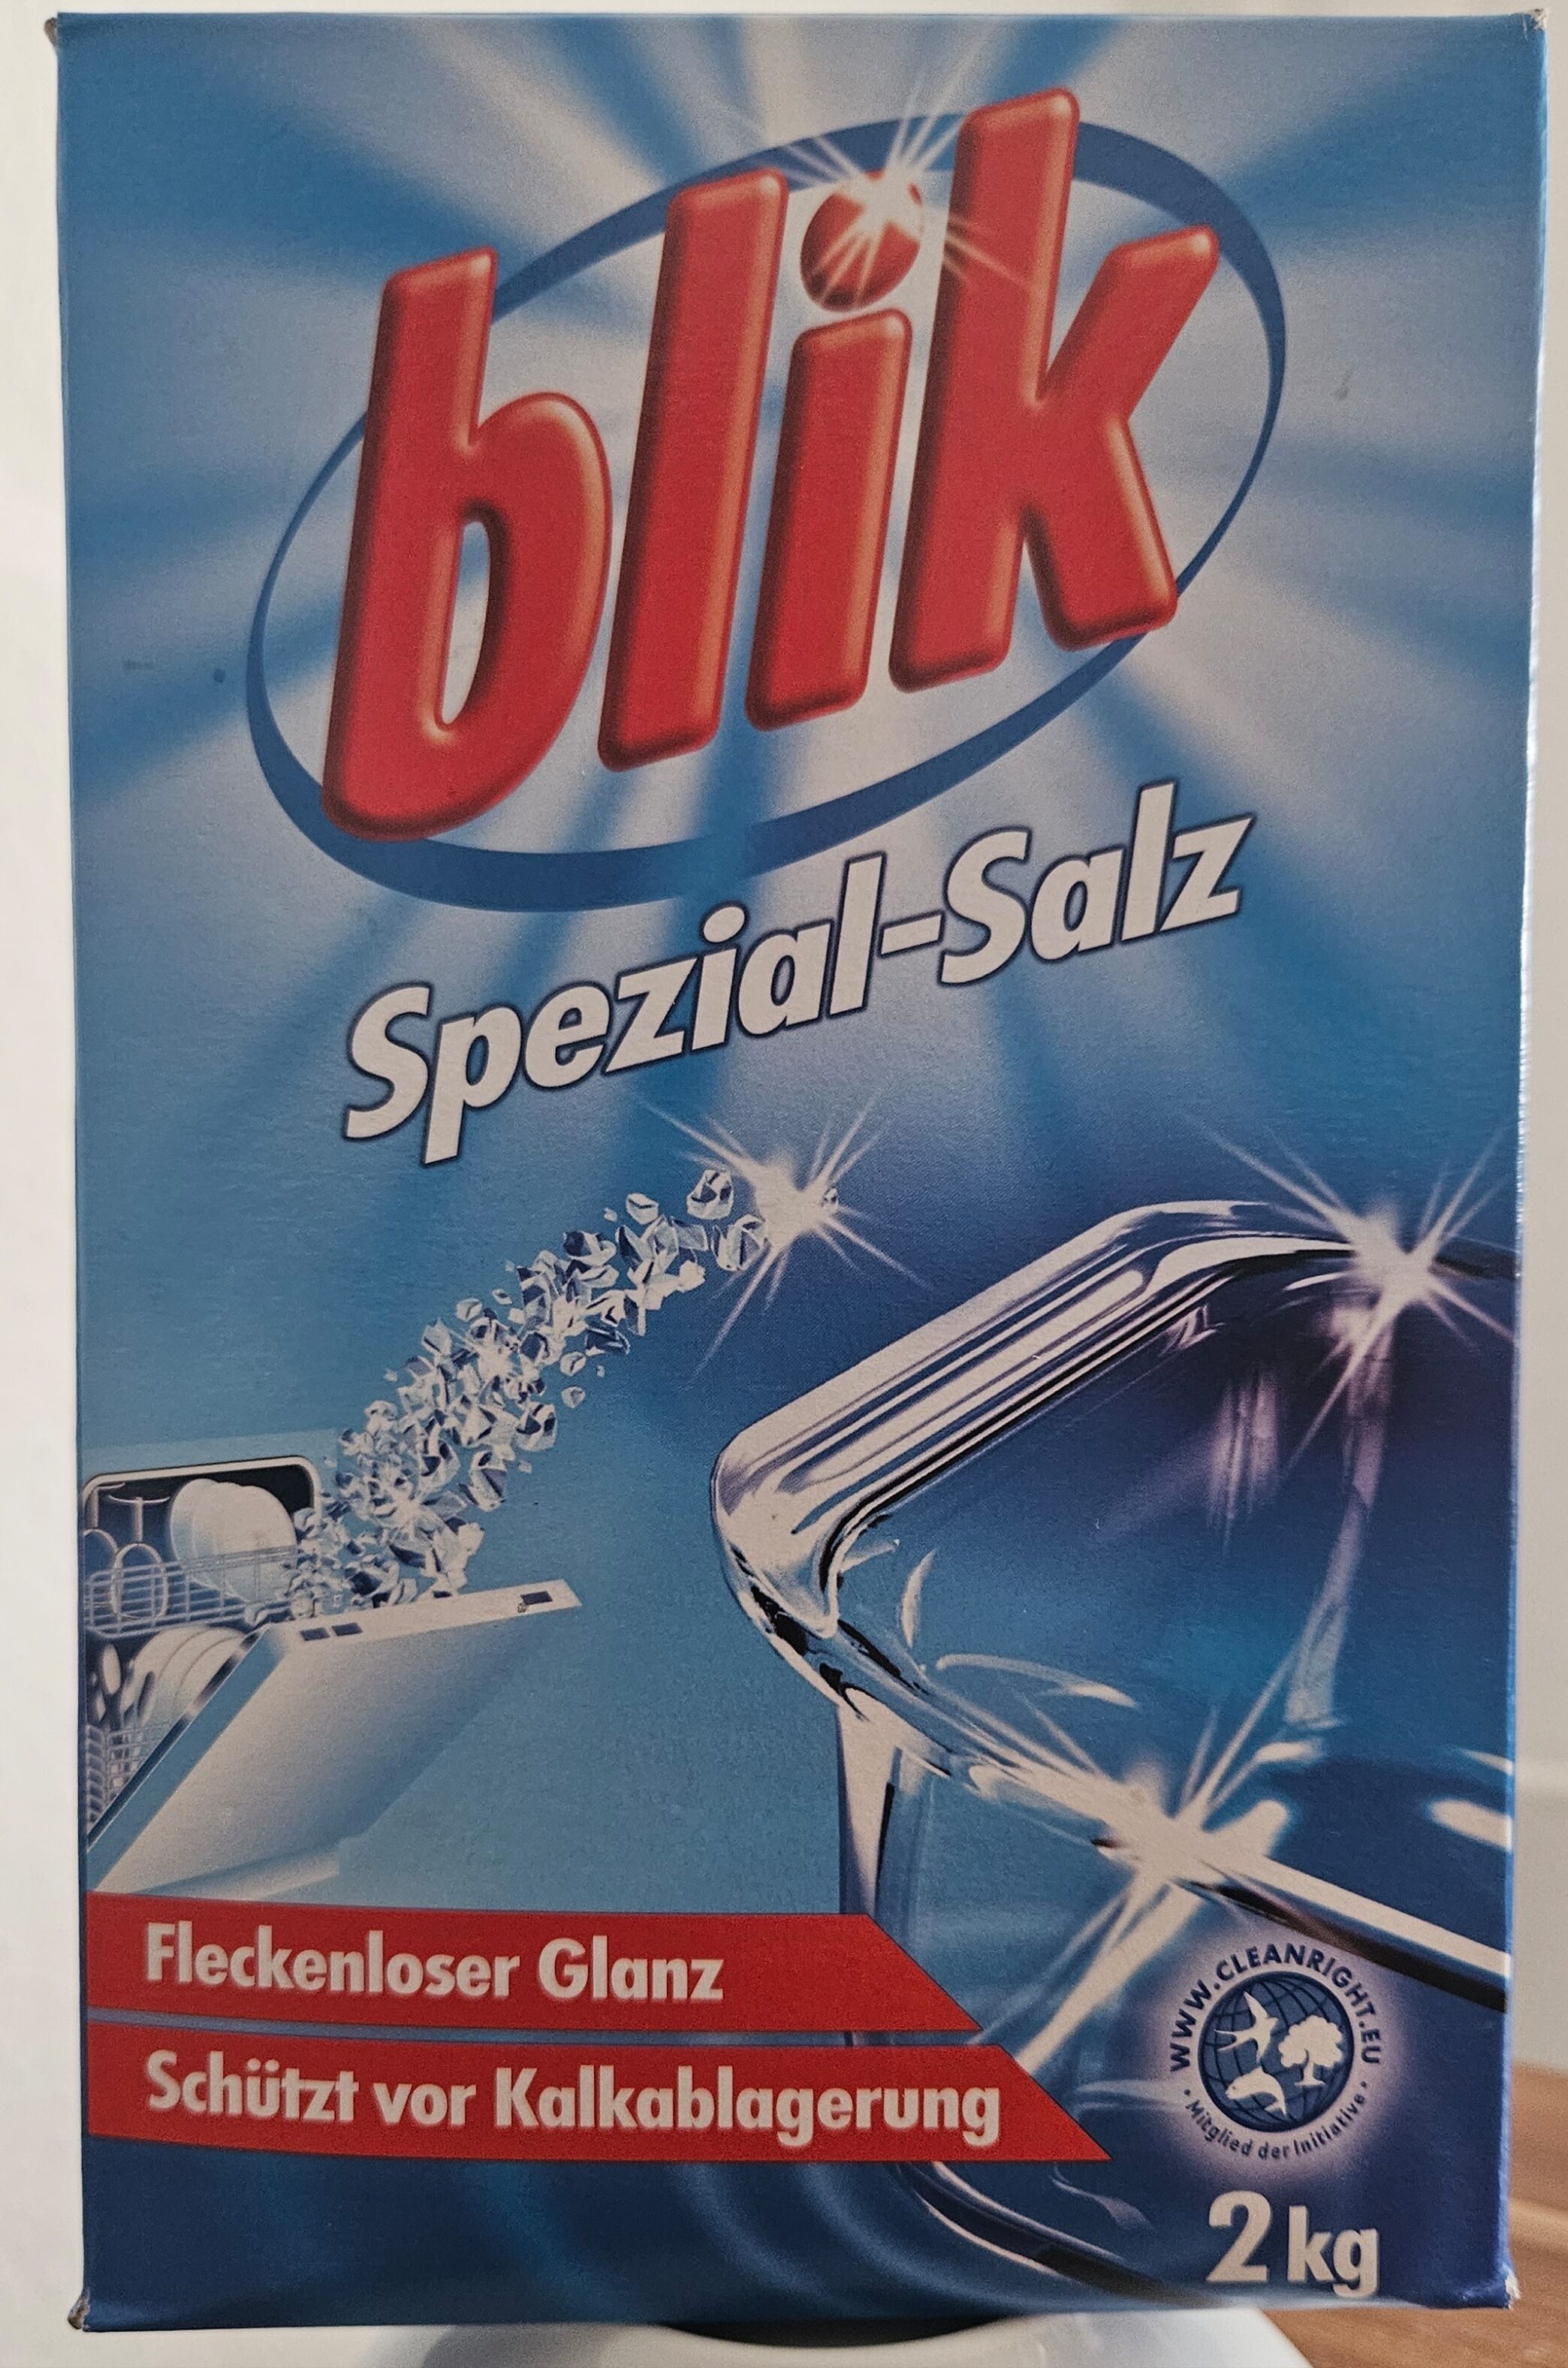 blik Spezial-Salz - Product - de